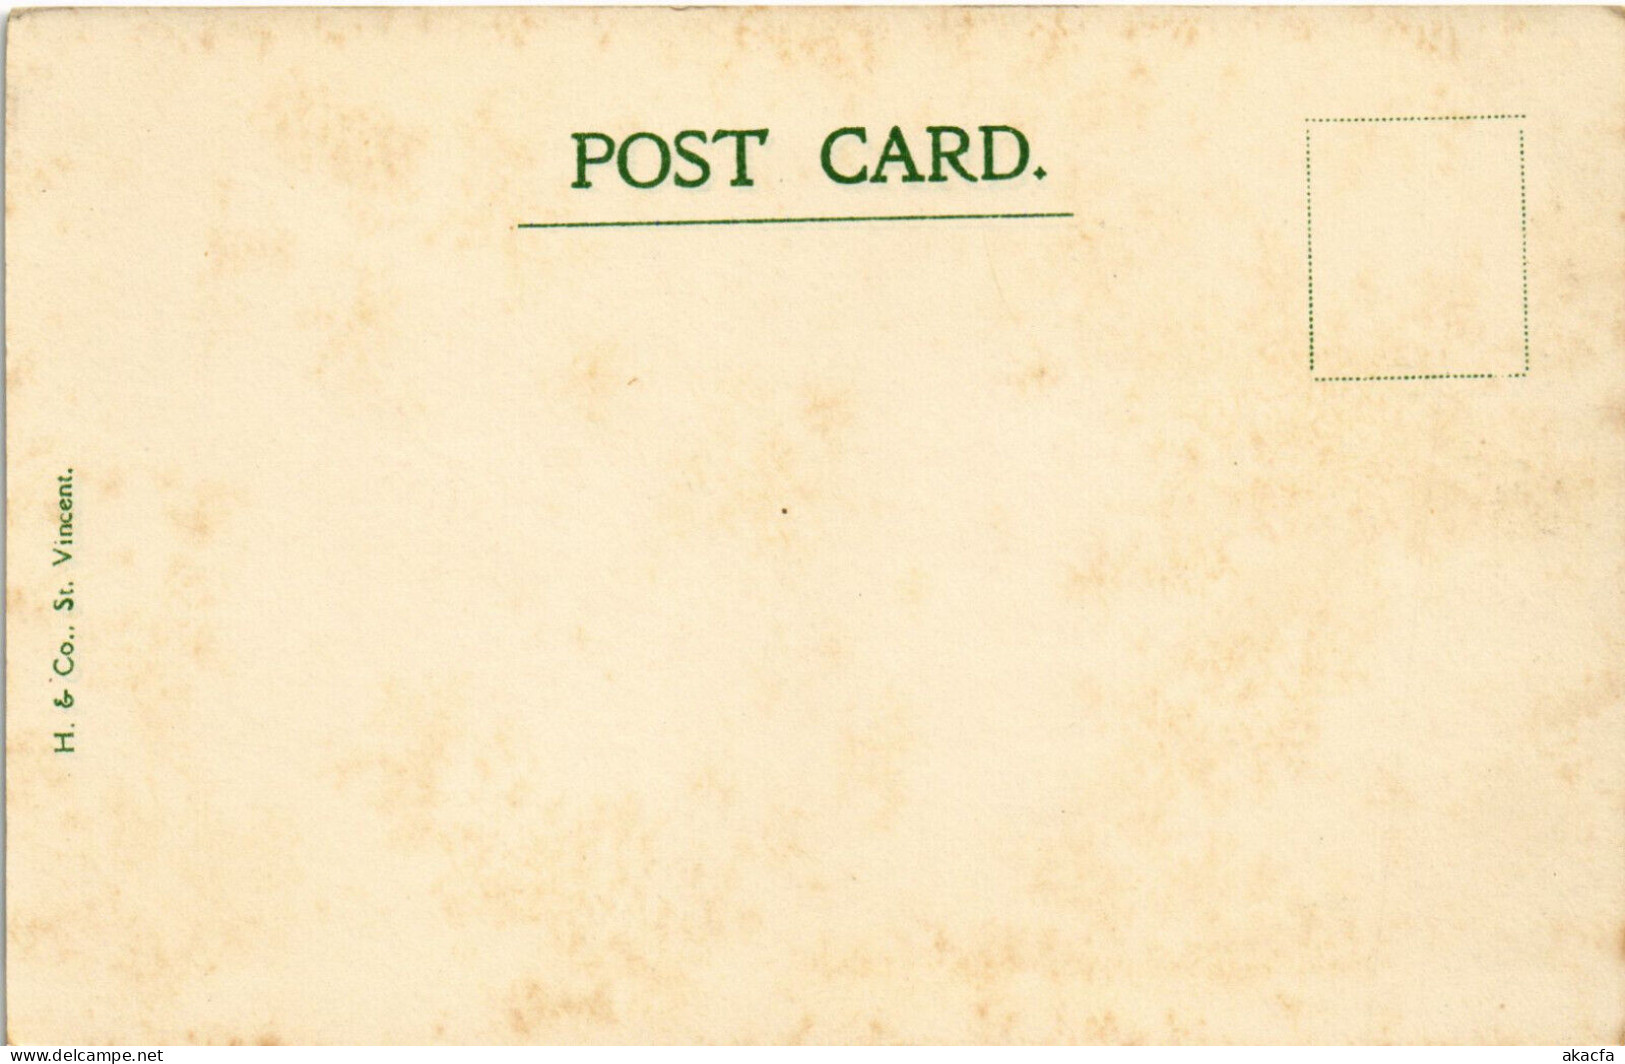 PC VIRGIN ISLANDS NEW VILLAGE FRENCHES Vintage Postcard (b52257) - Jungferninseln, Britische